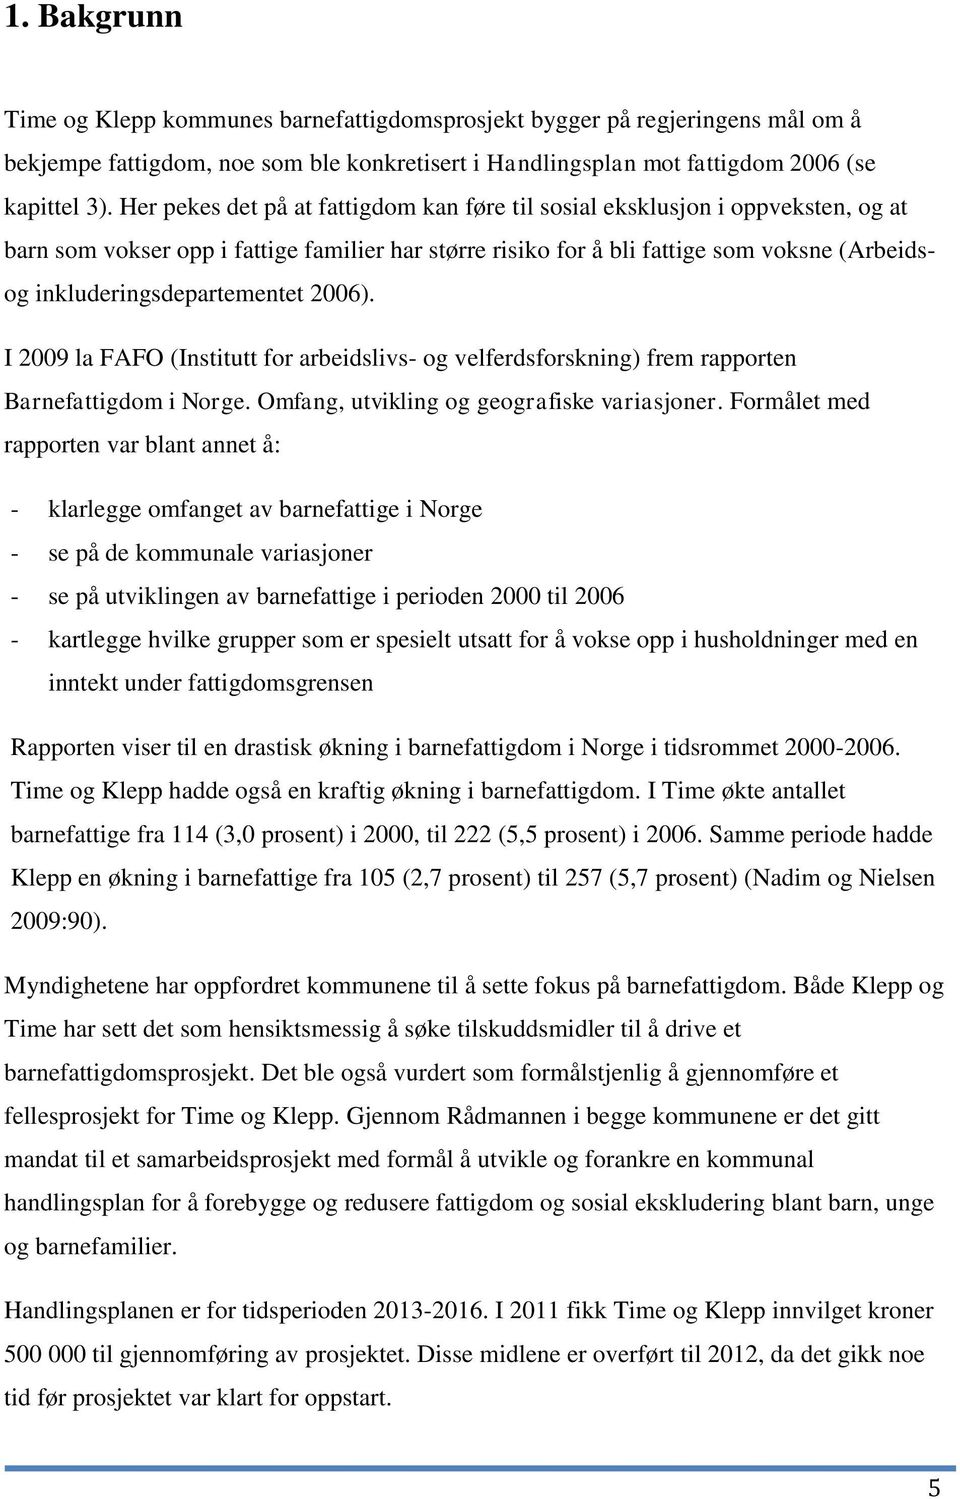 inkluderingsdepartementet 2006). I 2009 la FAFO (Institutt for arbeidslivs- og velferdsforskning) frem rapporten Barnefattigdom i Norge. Omfang, utvikling og geografiske variasjoner.